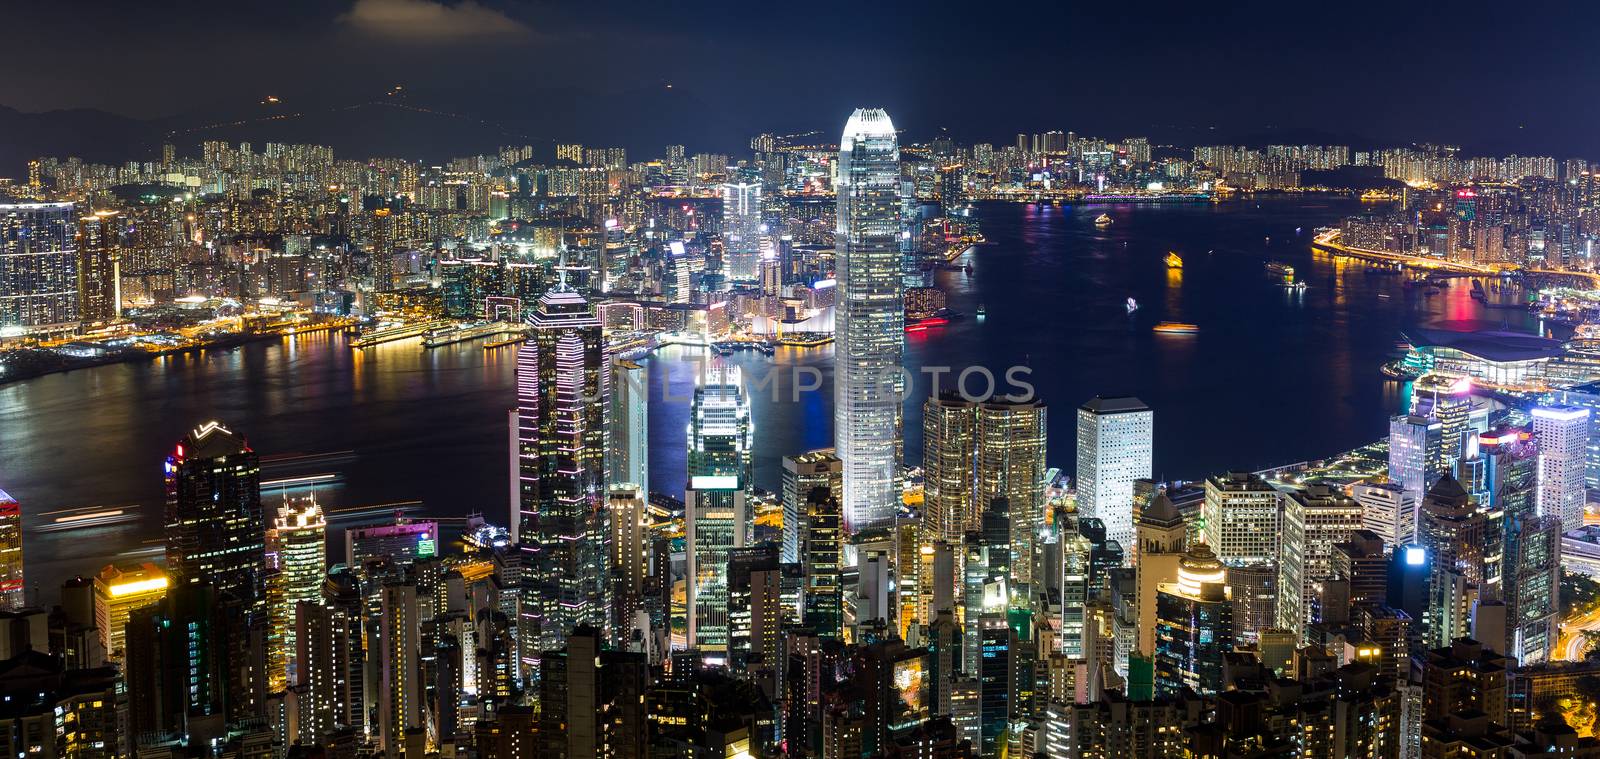 Hong Kong skyline at night by leungchopan